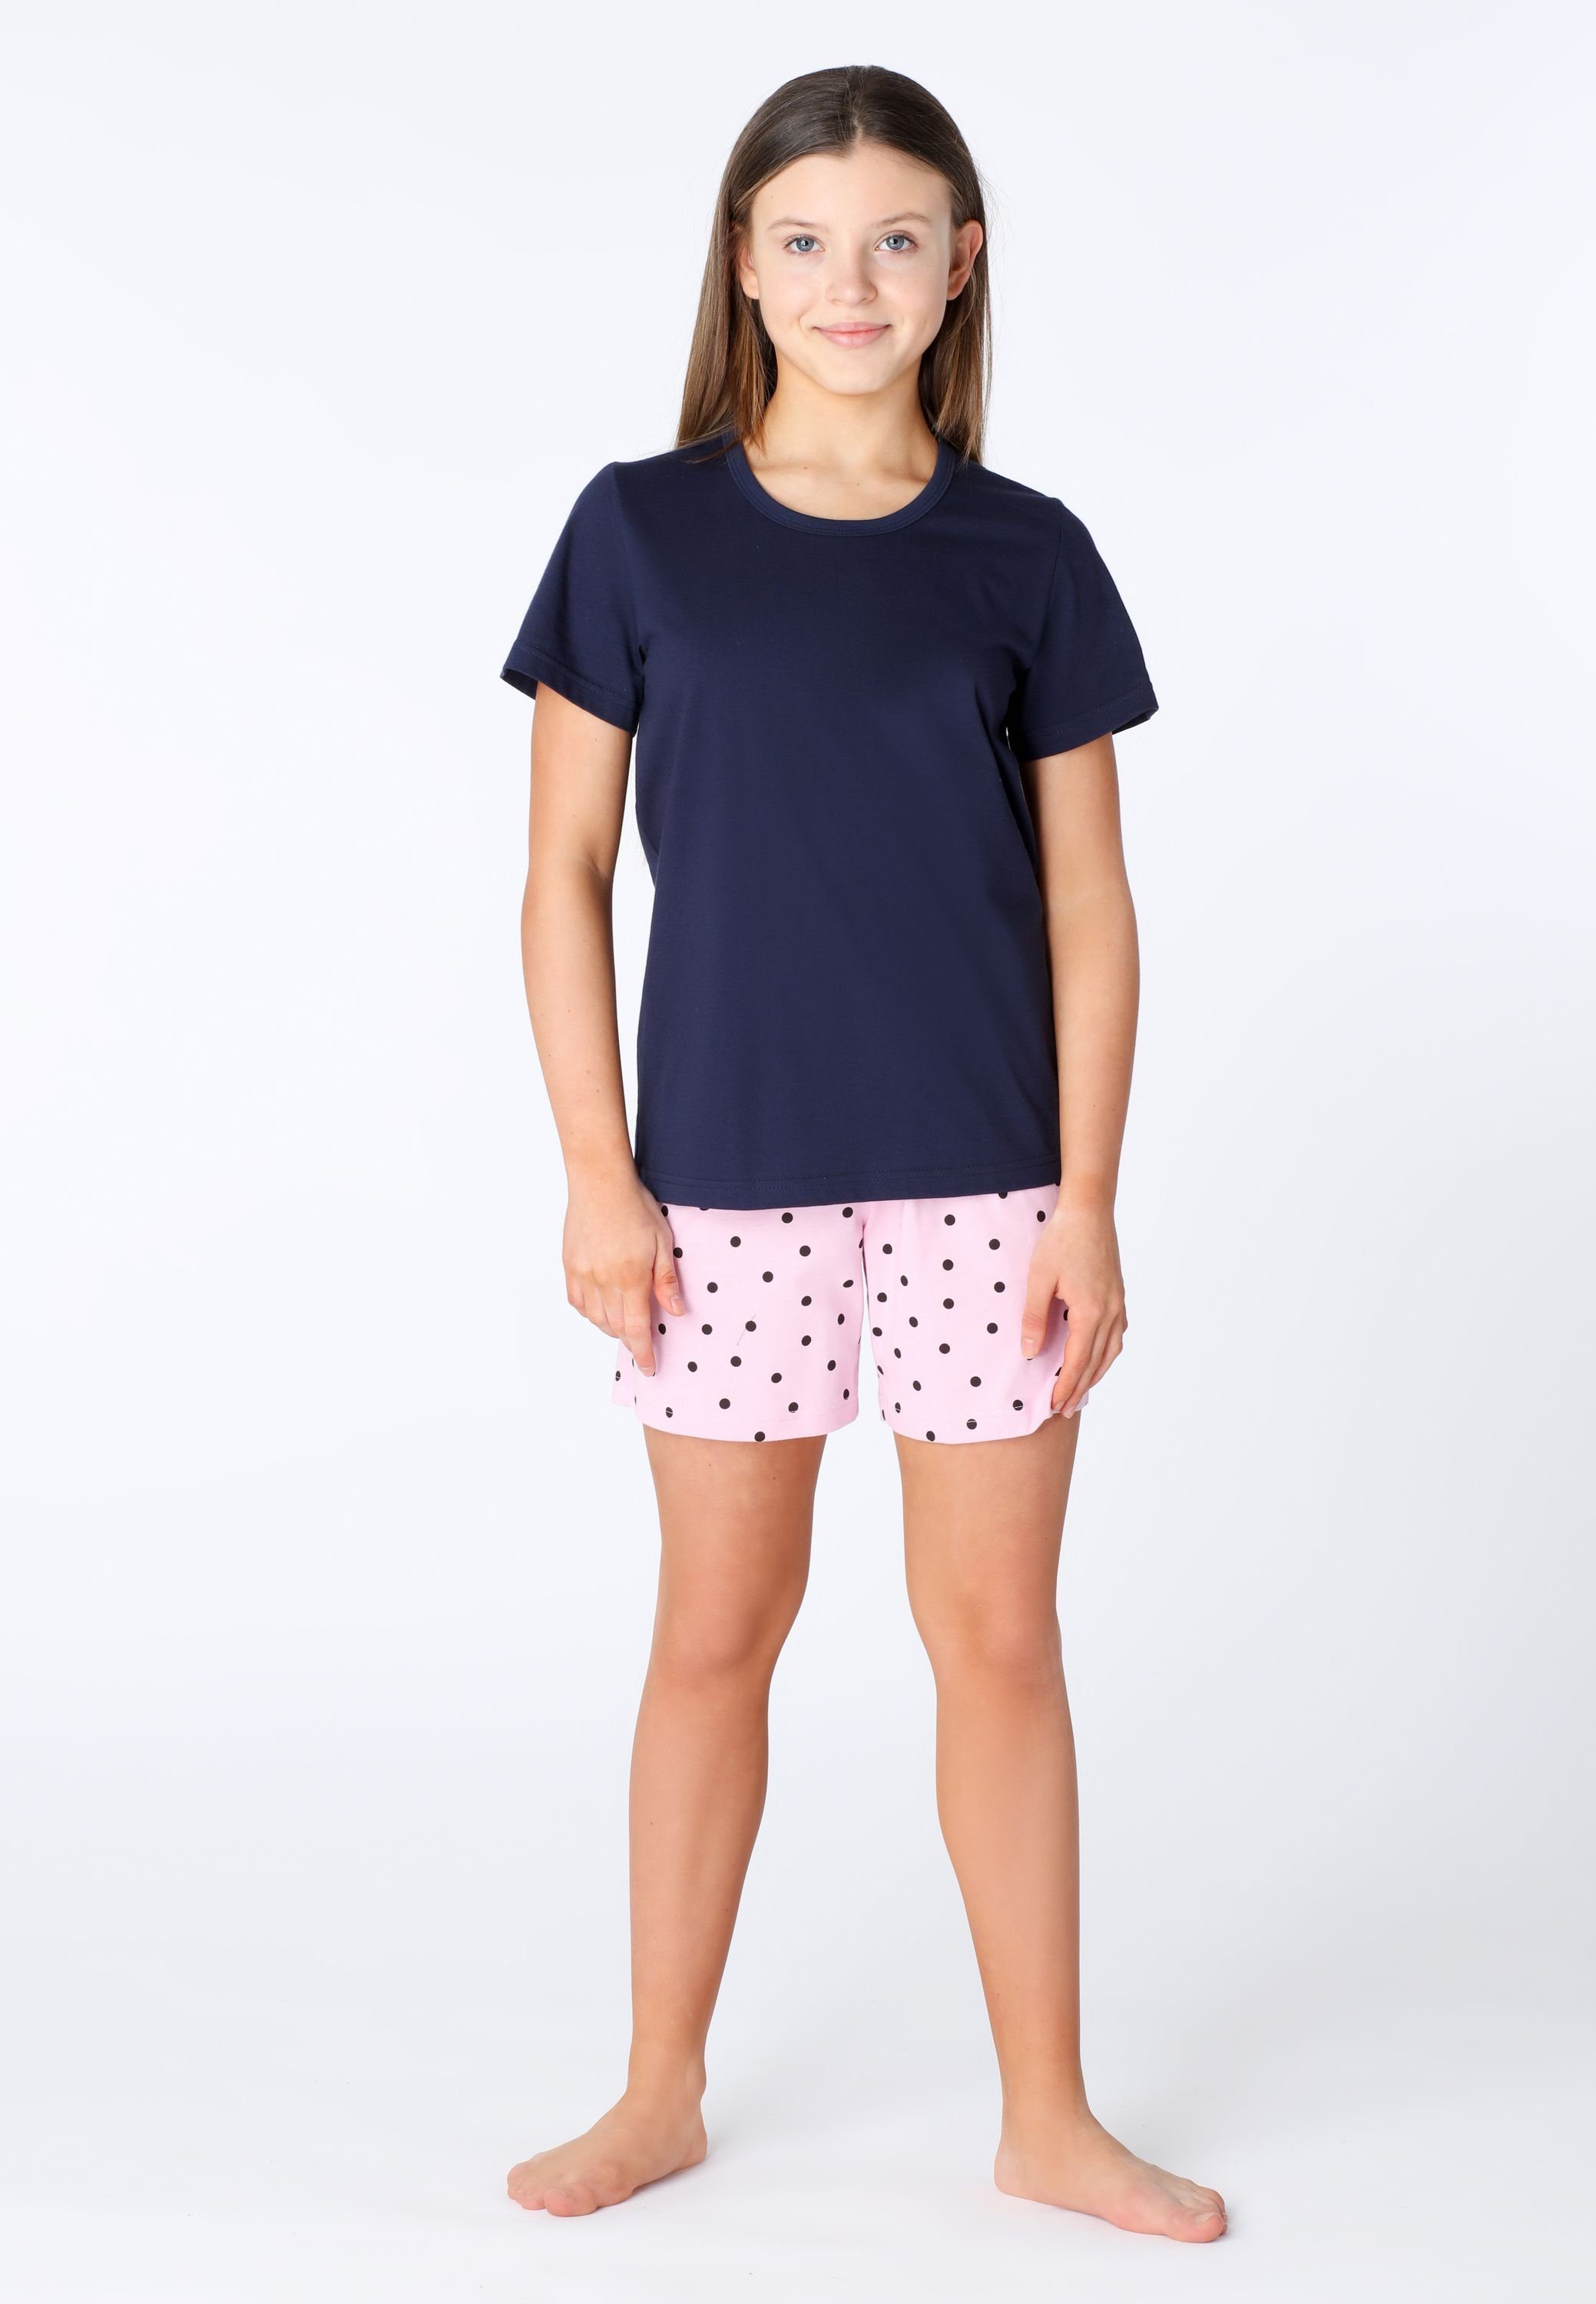 Style Baumwolle Kurz aus Marine/Rosa/Punkte Pyjama Merry MS10-265 Schlafanzüge Schlafanzug Set Mädchen